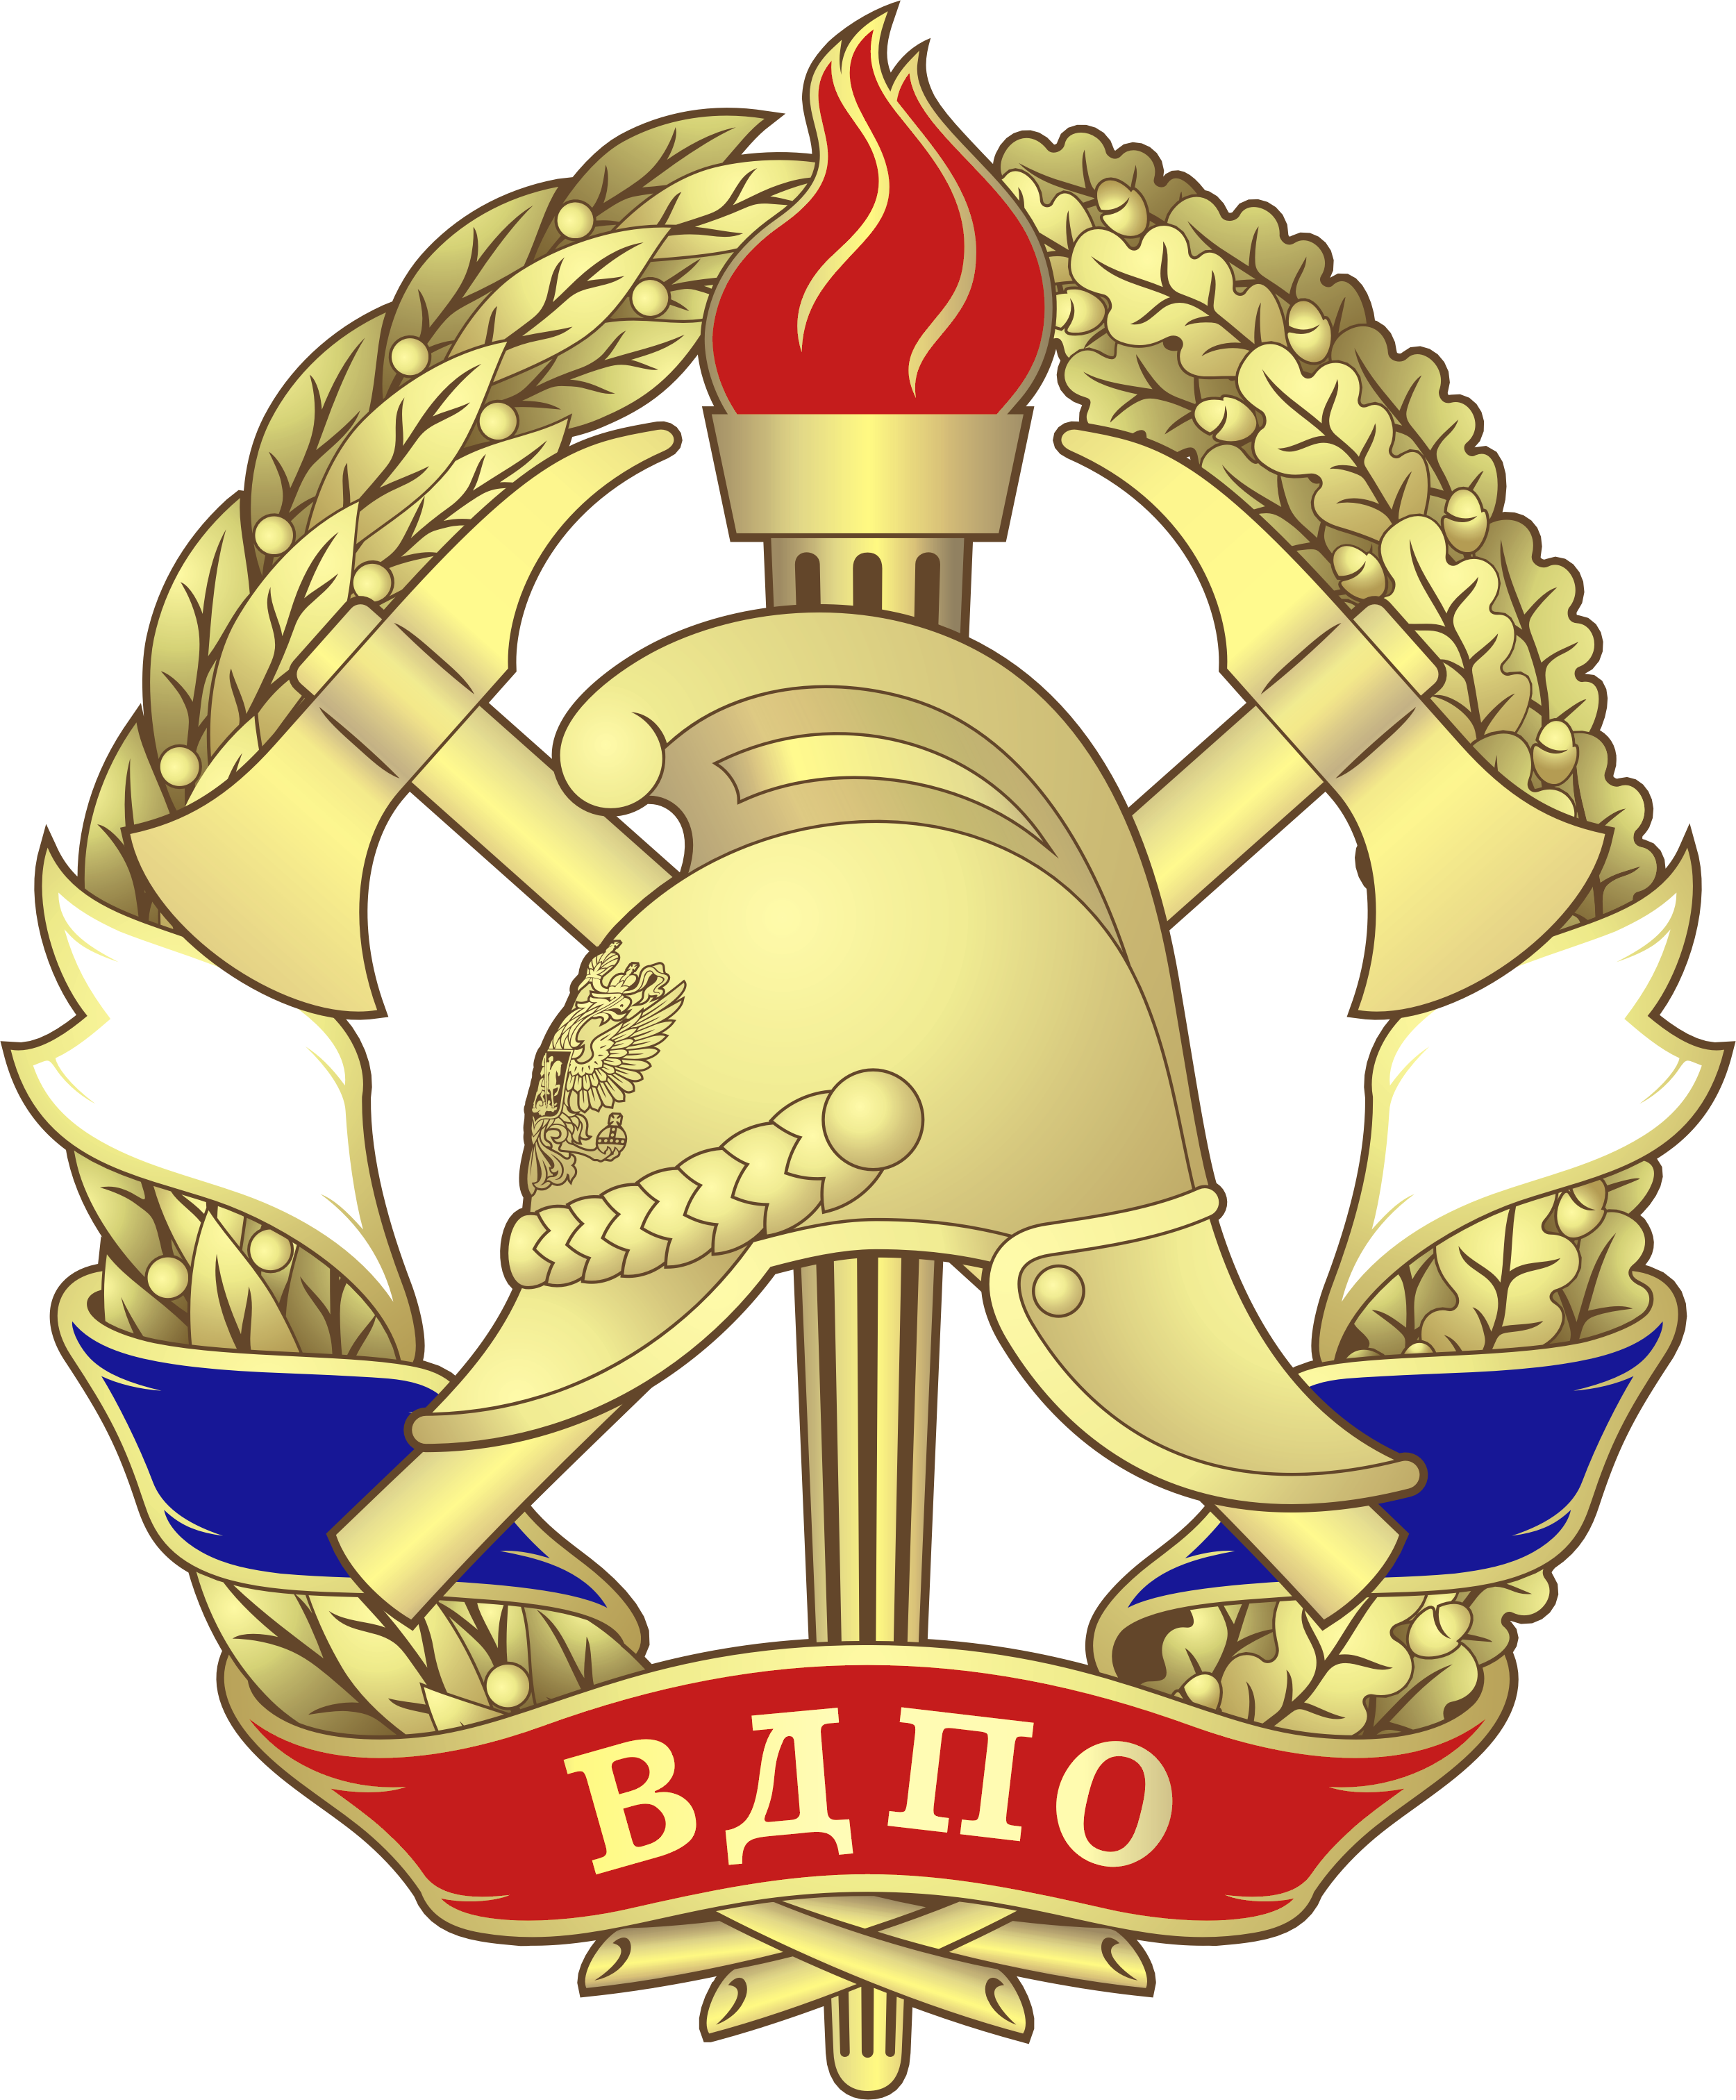 Флаг всероссийского пожарного общества